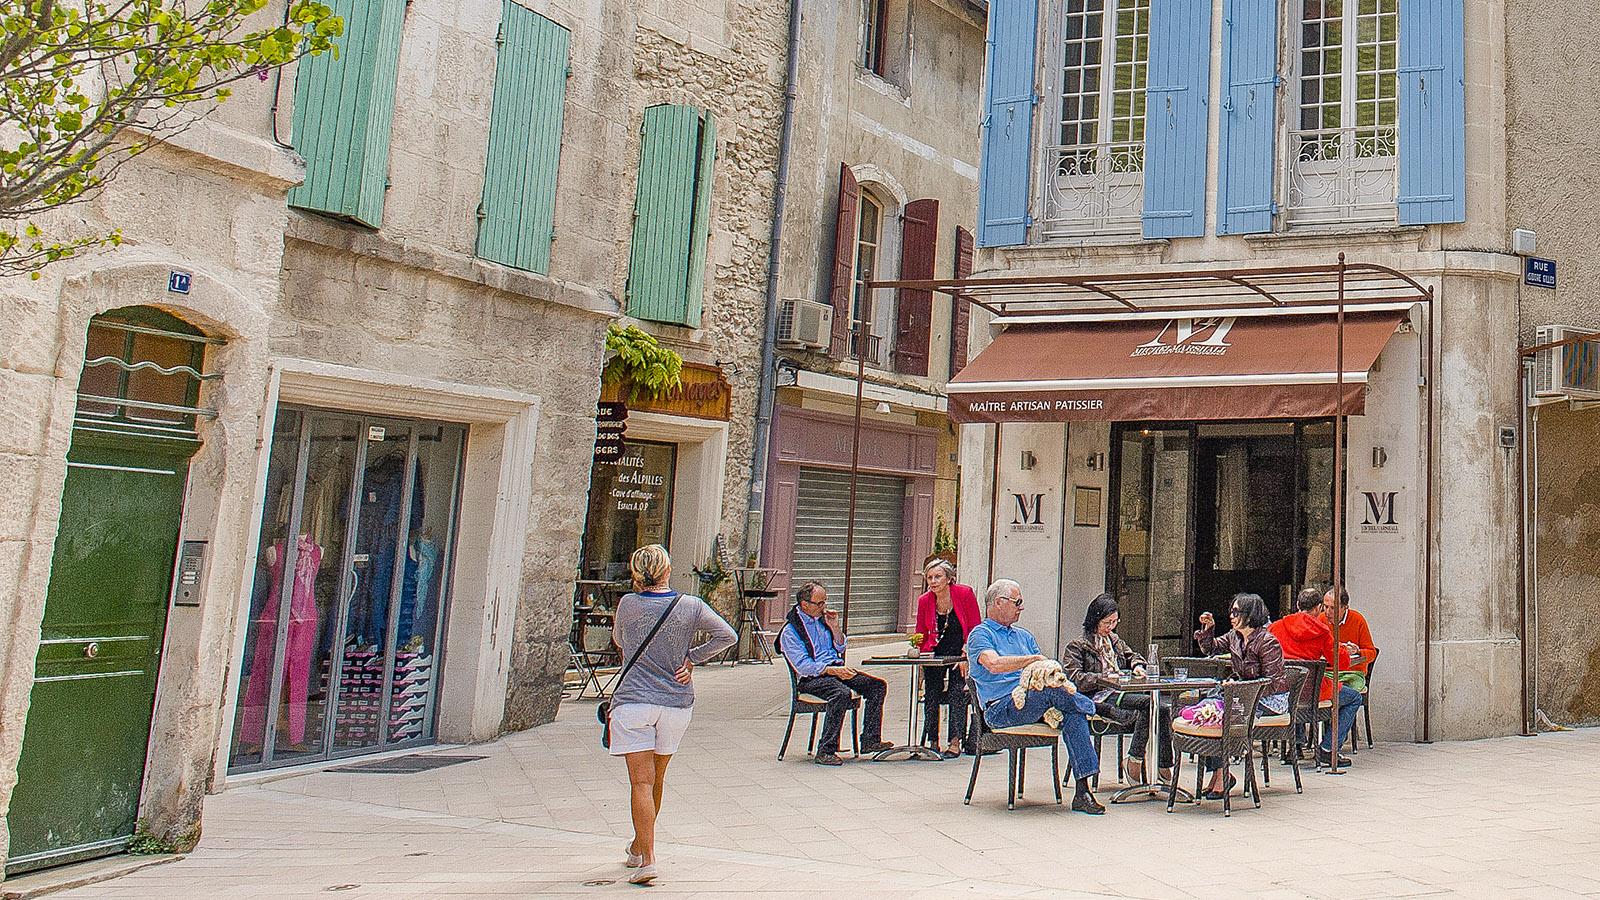 In der Altstadt von Saint-Rémy-de-Provence. Foto: Hike Maunder